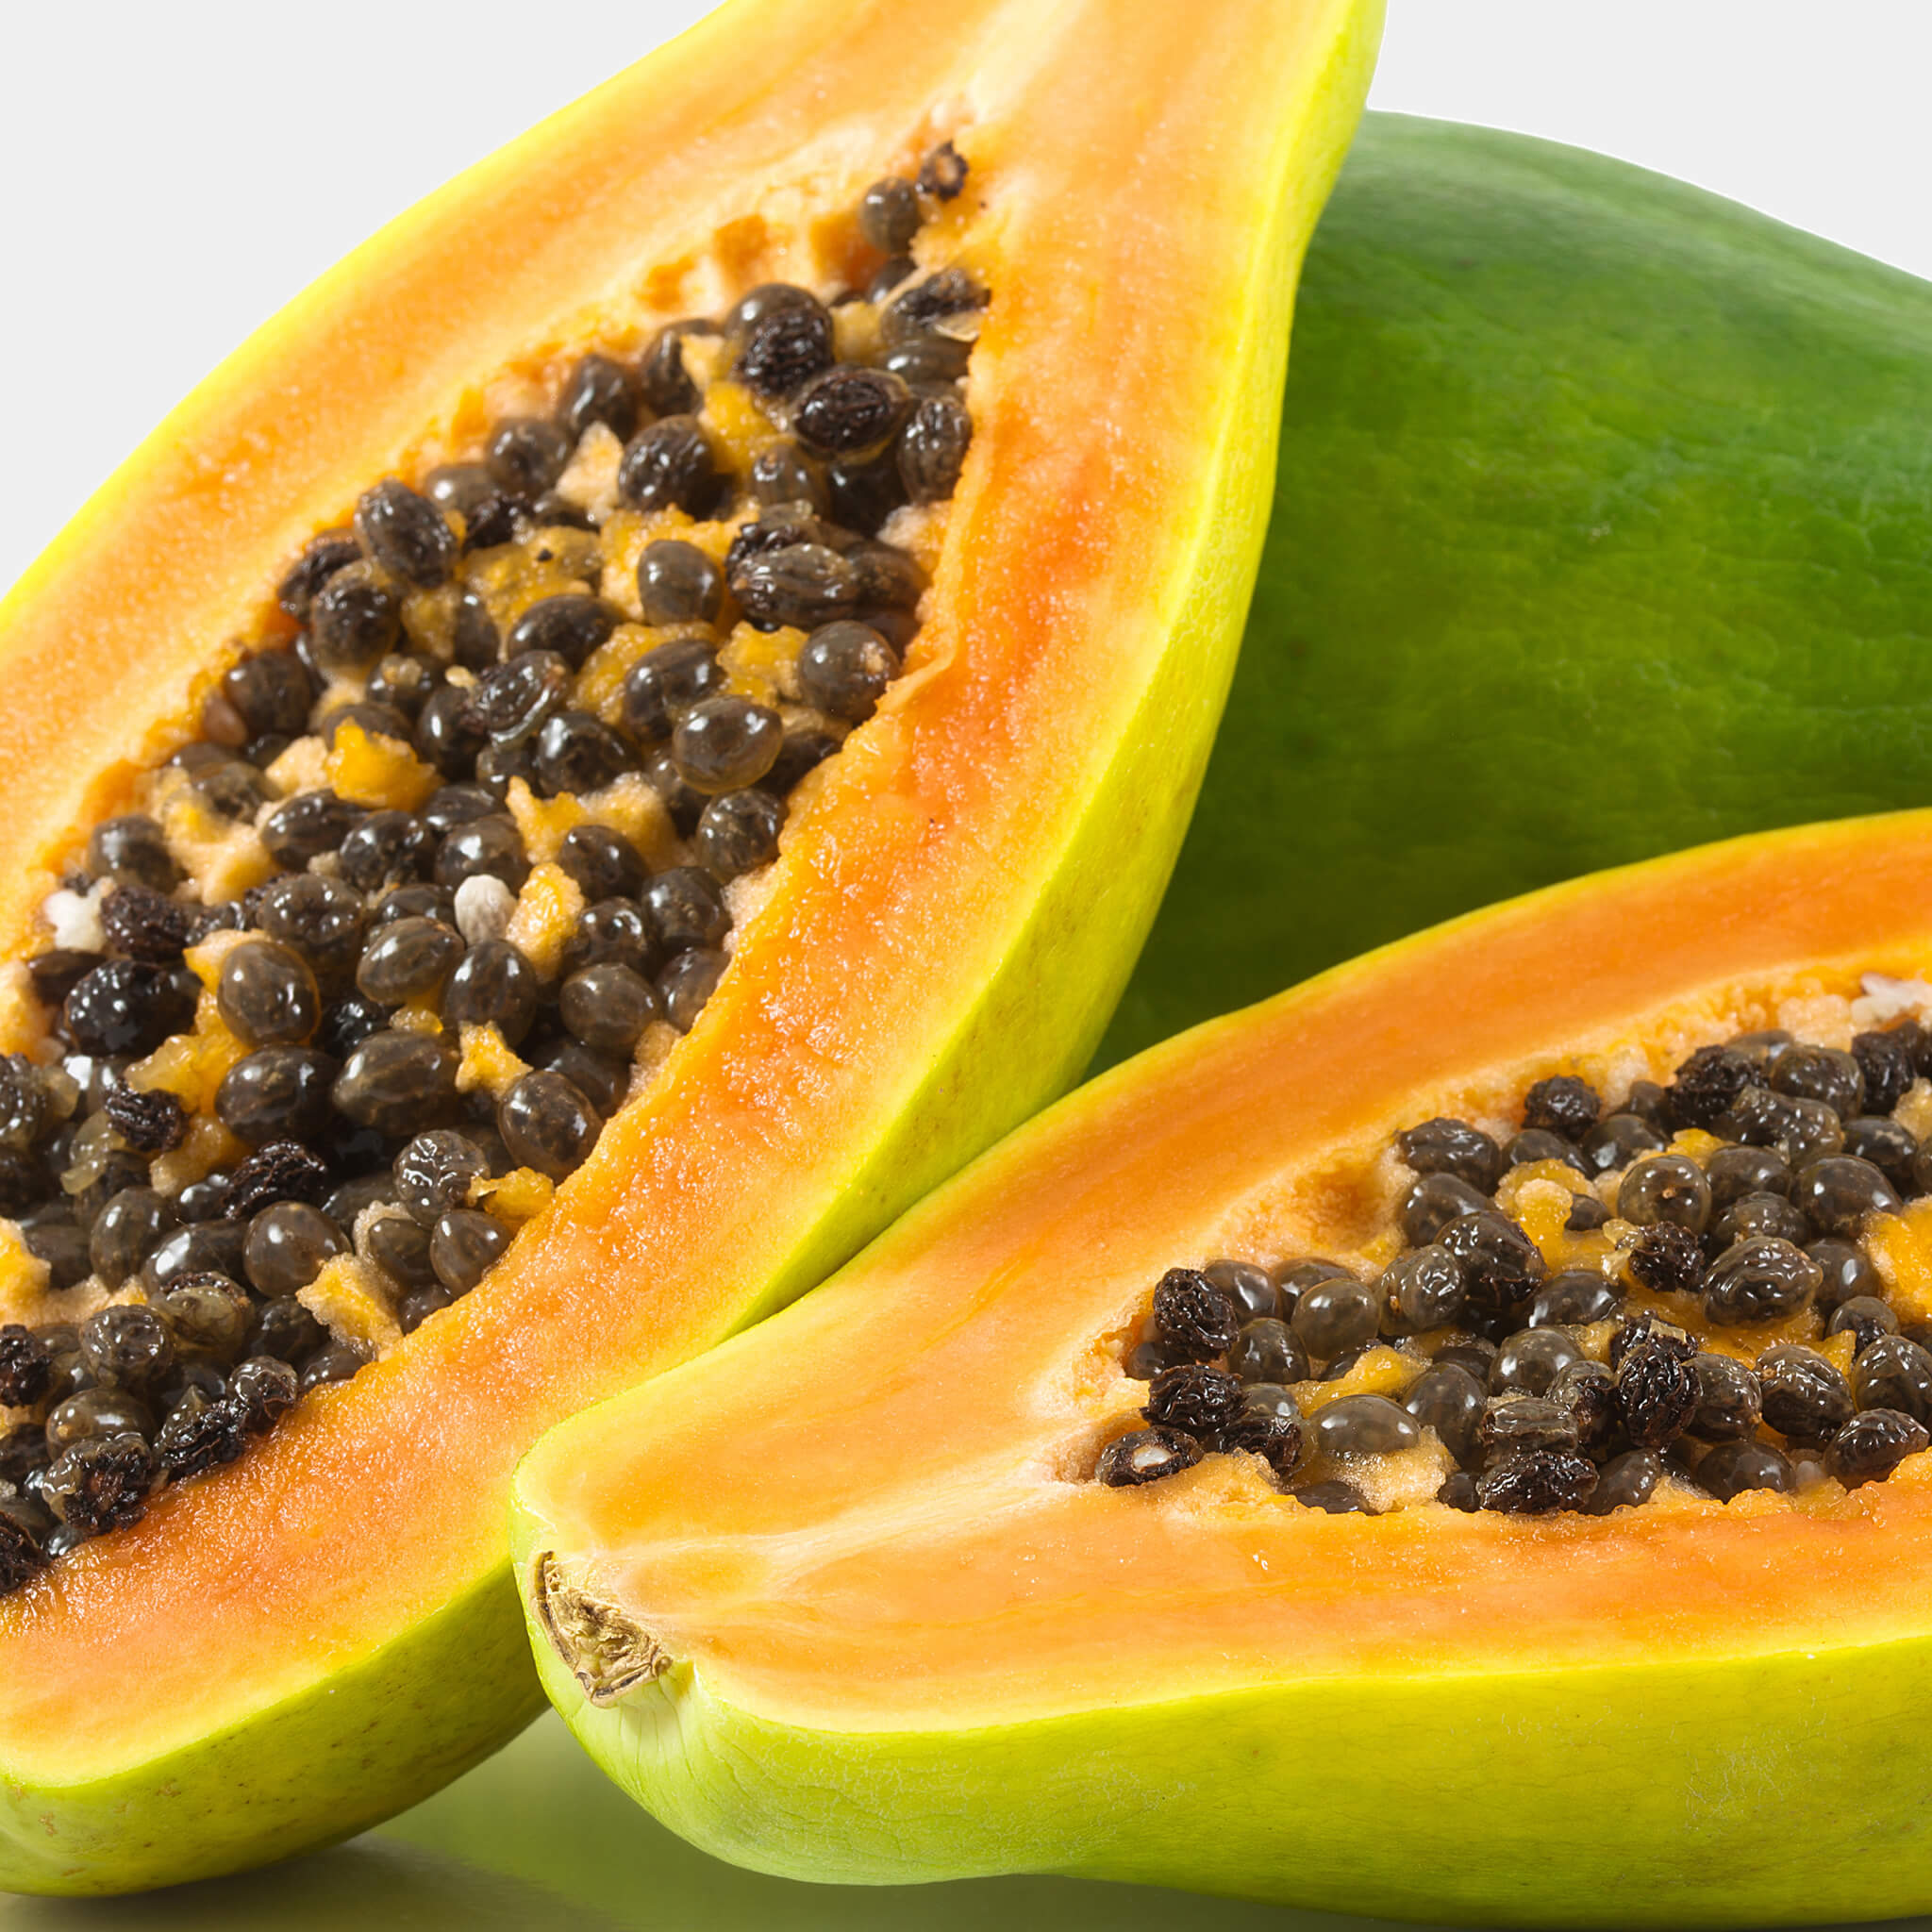 Product Page Key Ingredients: Papaya